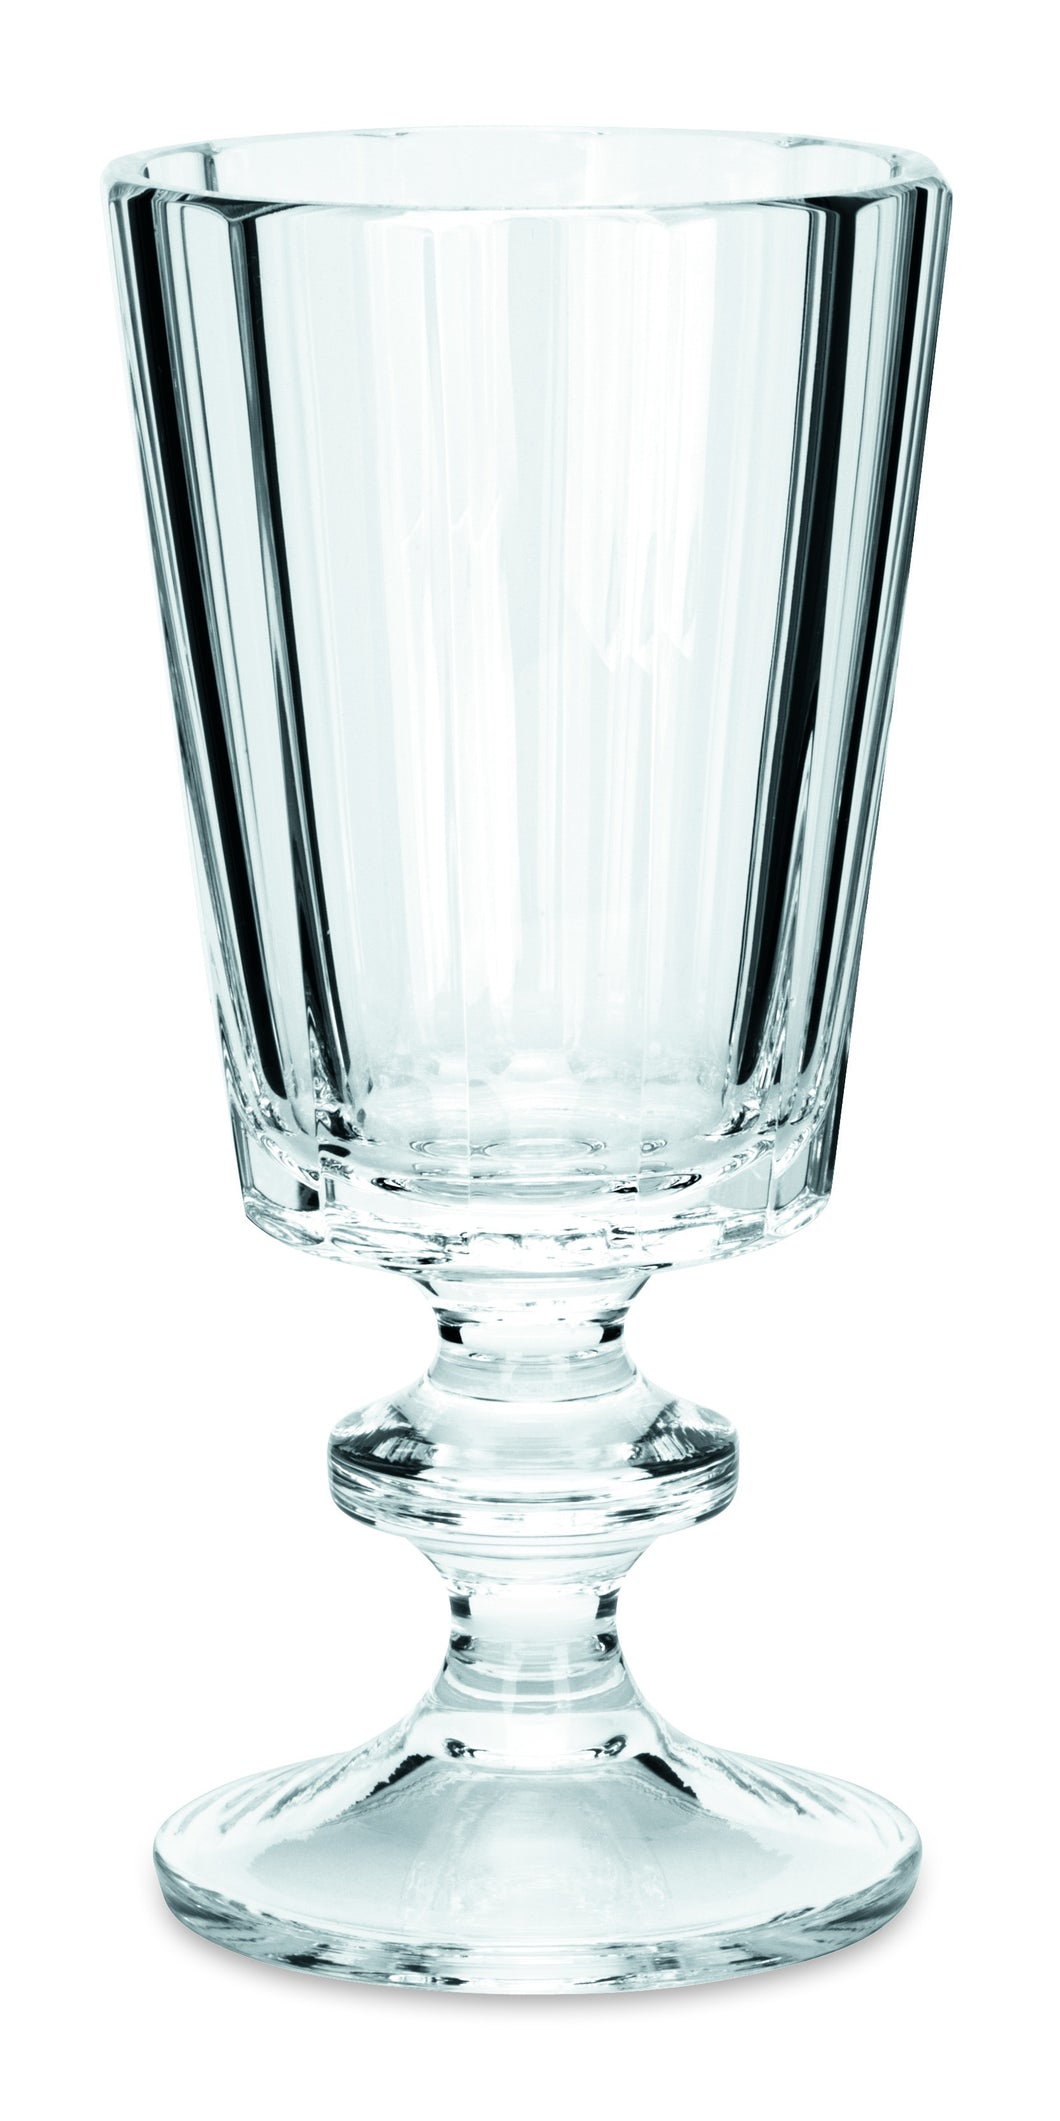 ROLAND klar, polierter Flächenschliff - Weinglas 138 mm